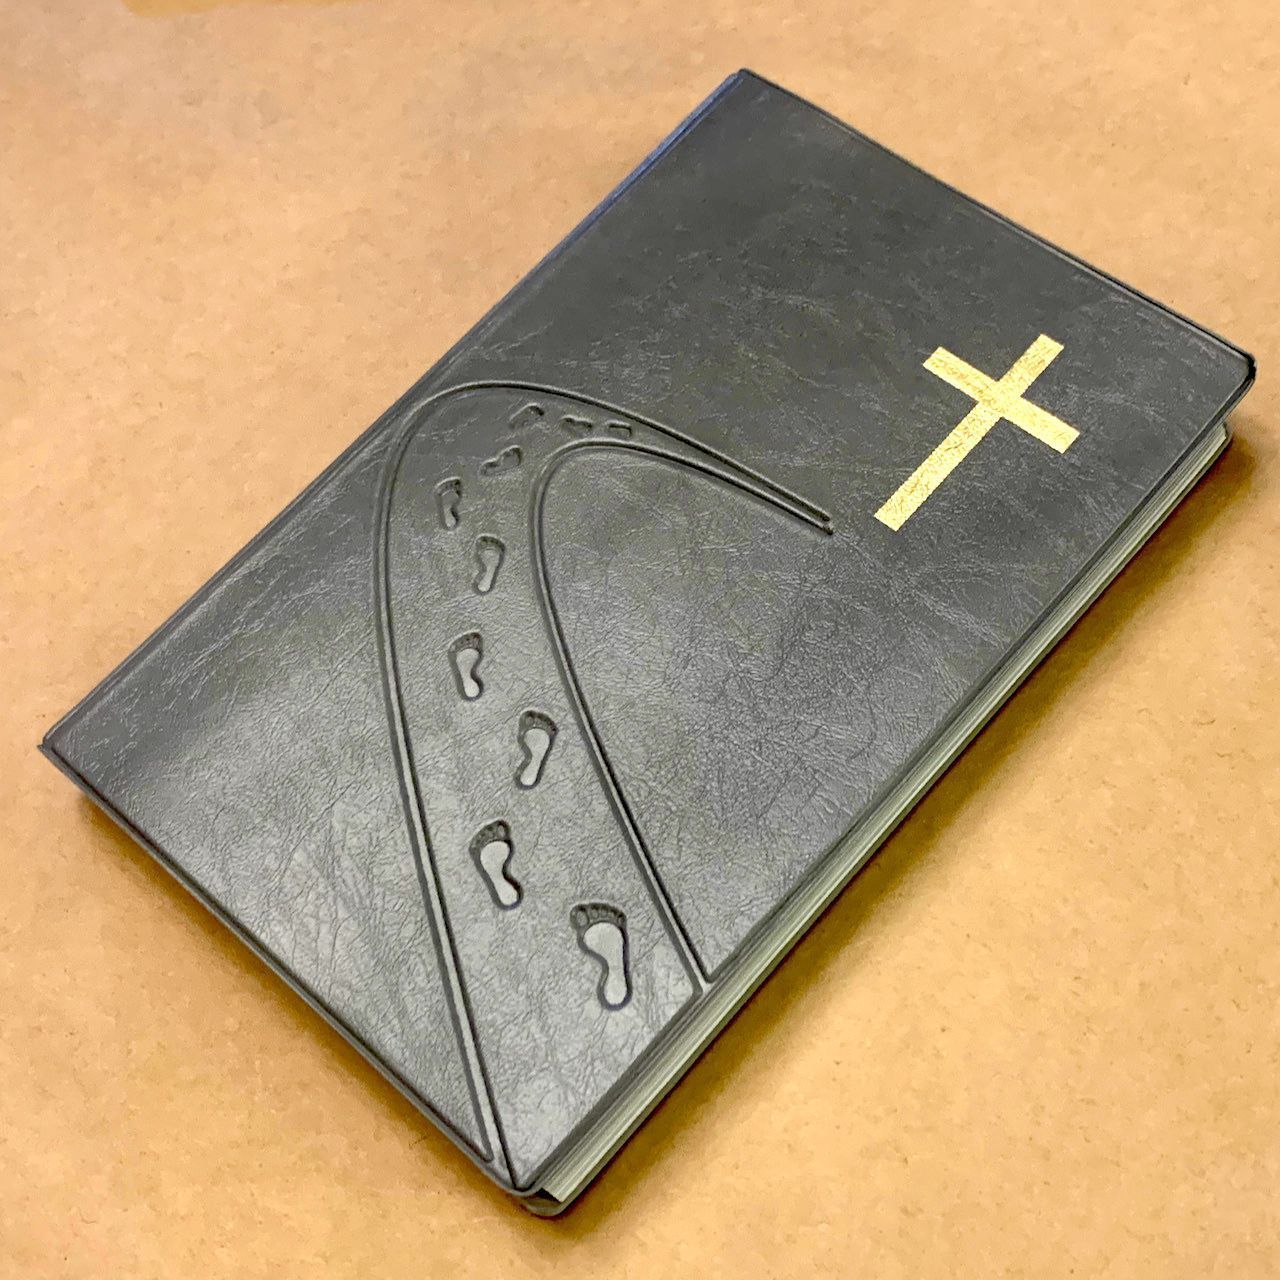 Библия 055 код B3 7073 переплет из искусственной кожи, цвет серебристый с рельефом, дизайн "дорога ко Кресту", надпись "Библия" с торца, средний формат, 140*213 мм, параллельные места по центру страницы, серебряный обрез, крупный шрифт